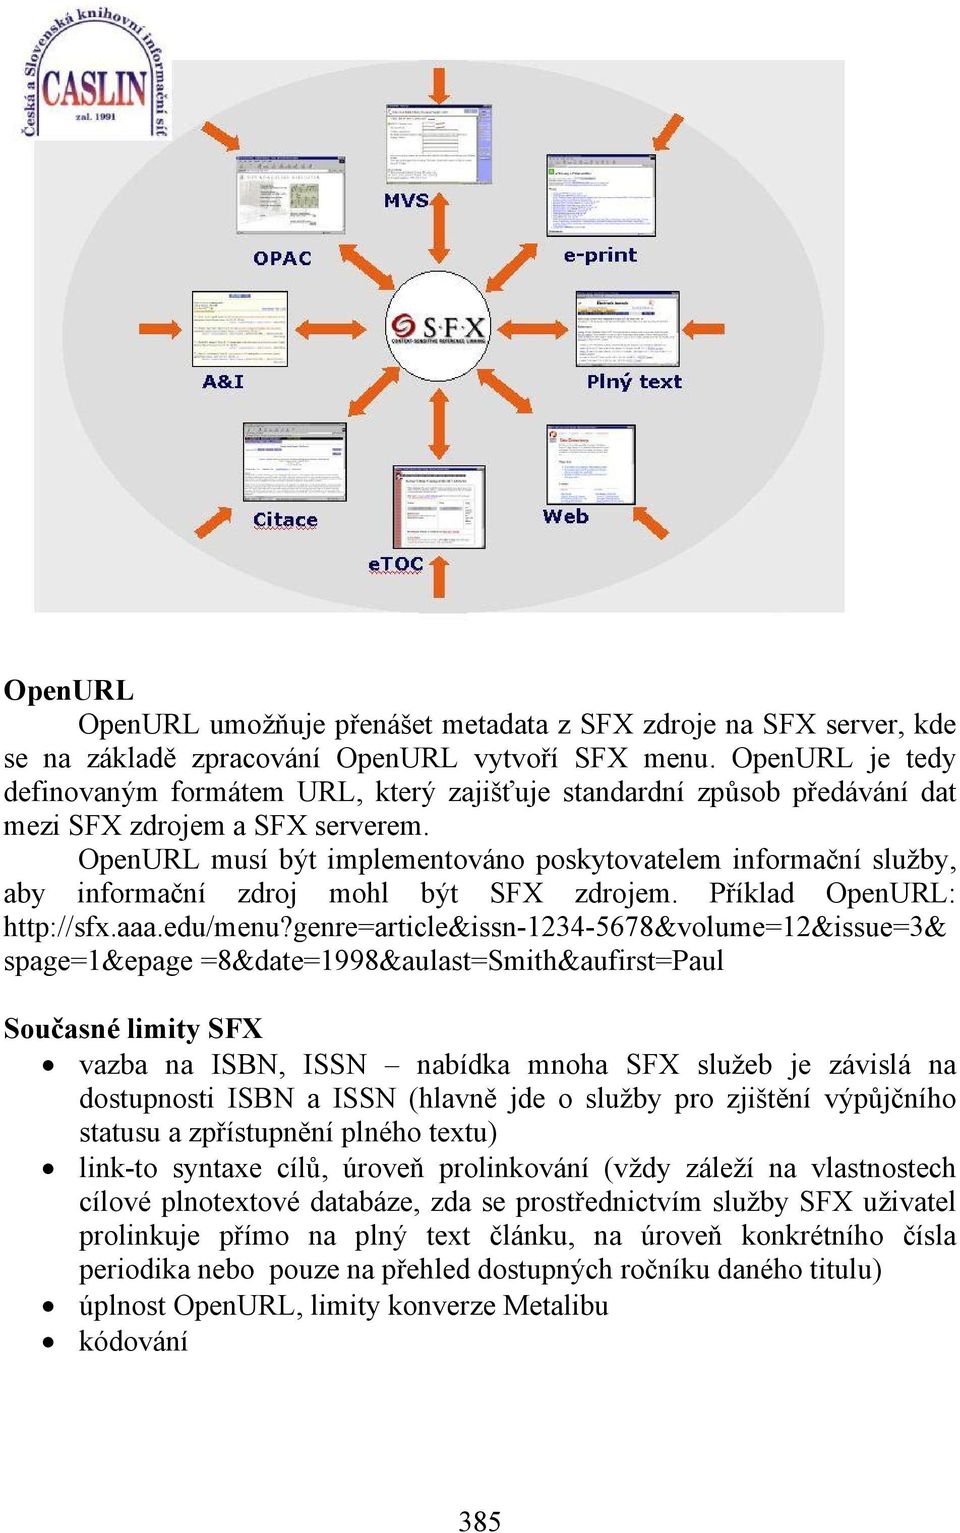 OpenURL musí být implementováno poskytovatelem informační služby, aby informační zdroj mohl být SFX zdrojem. Příklad OpenURL: http://sfx.aaa.edu/menu?